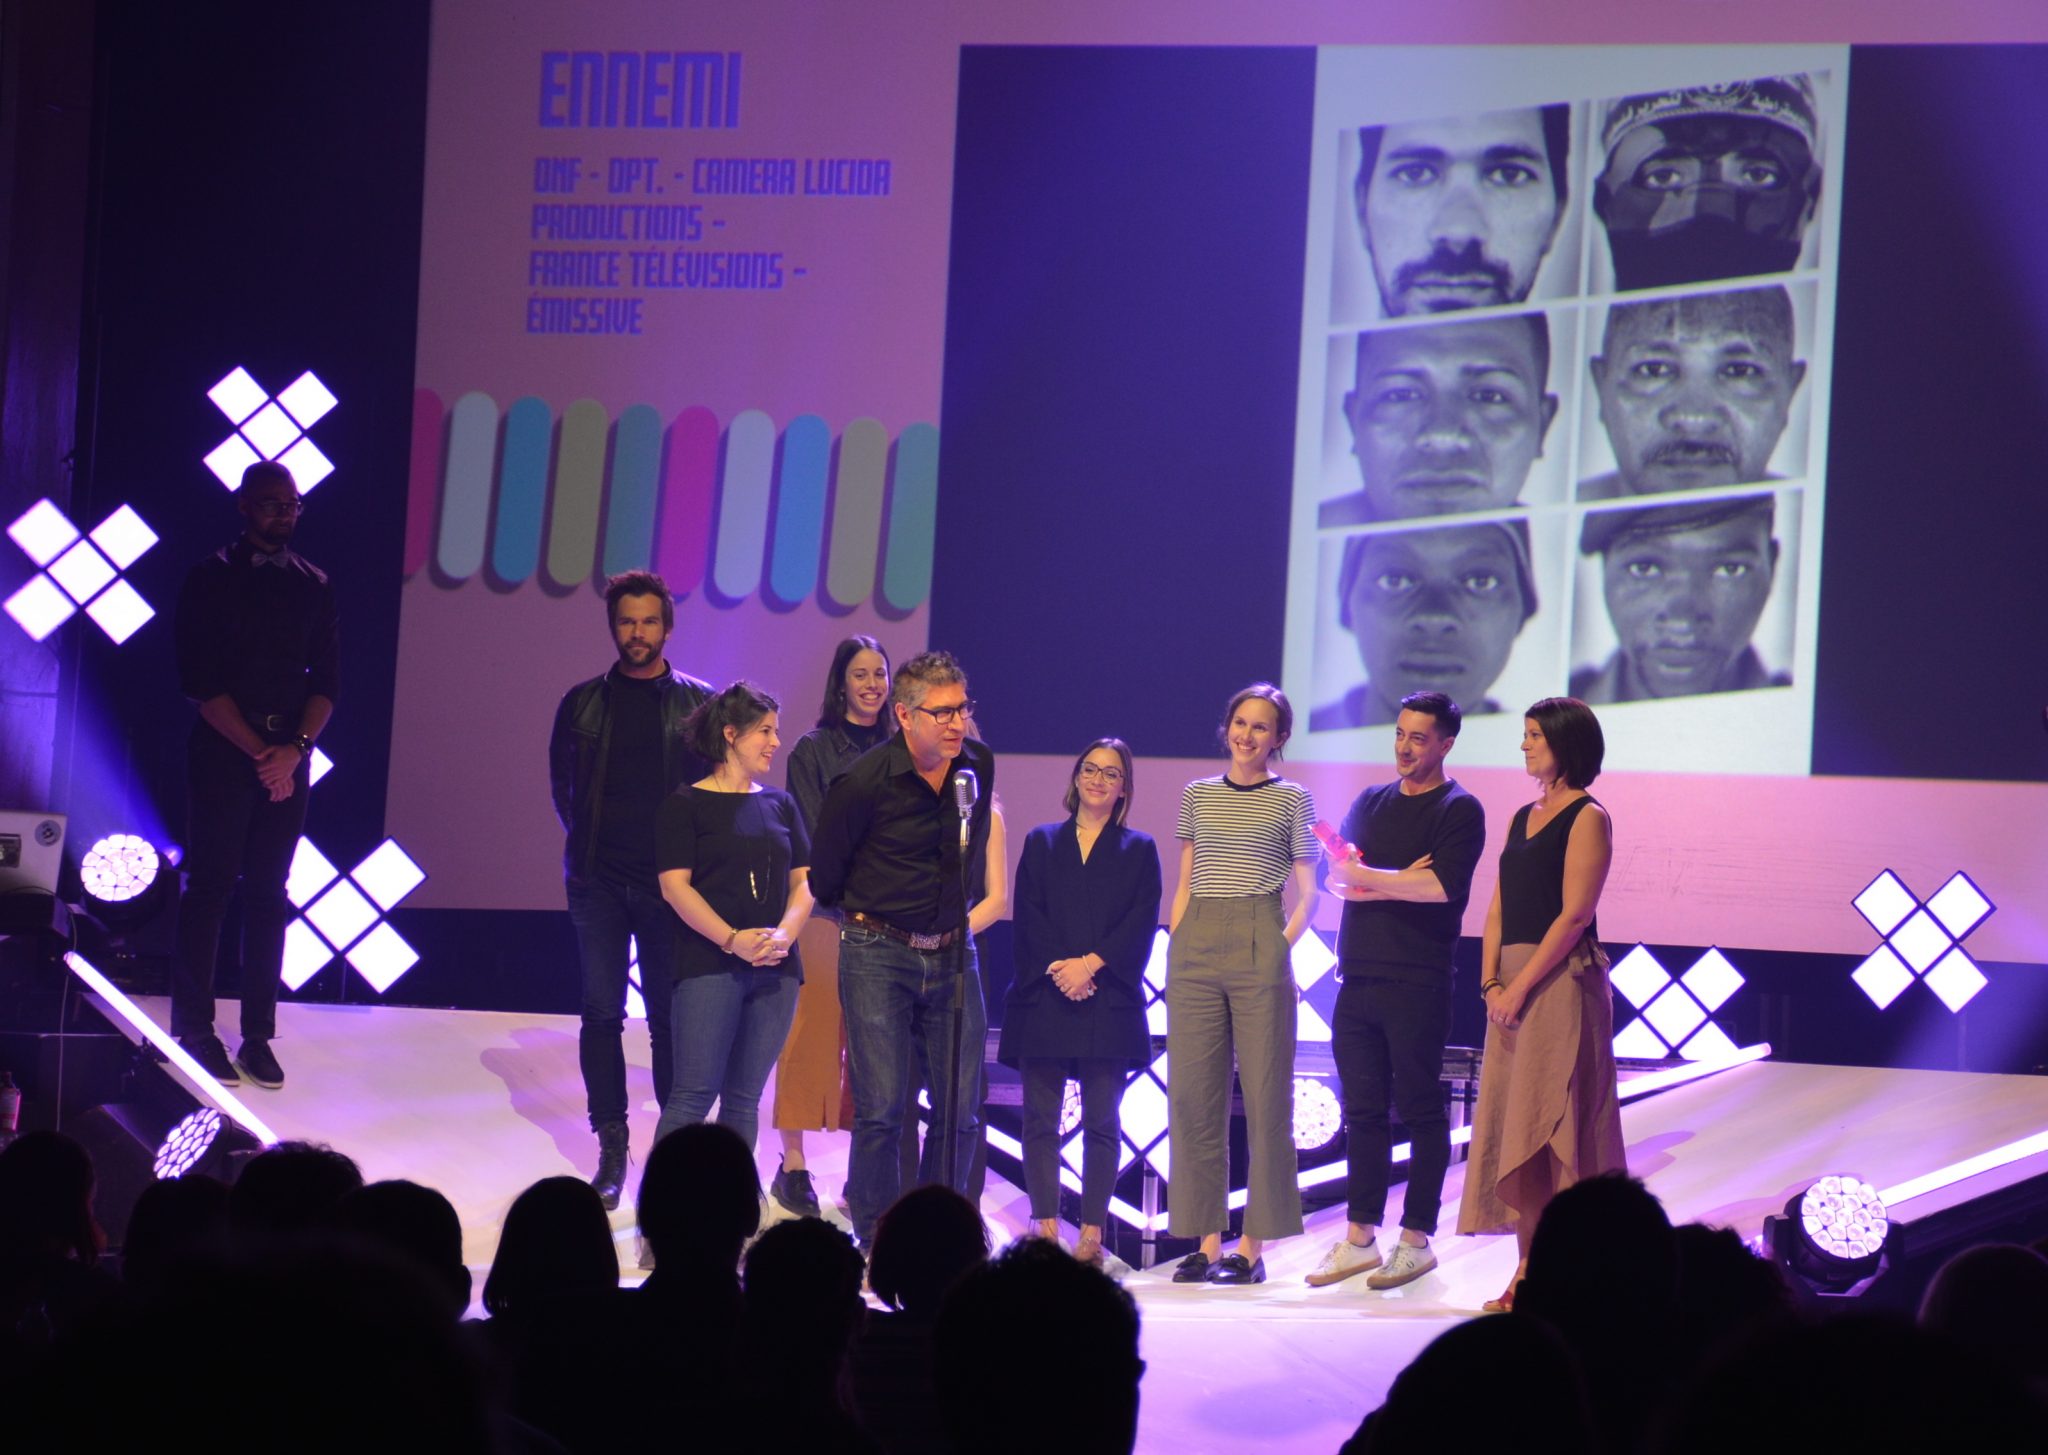 Lauréats des prix NUMIX, le grand prix décerné à la production immersive Ennemi